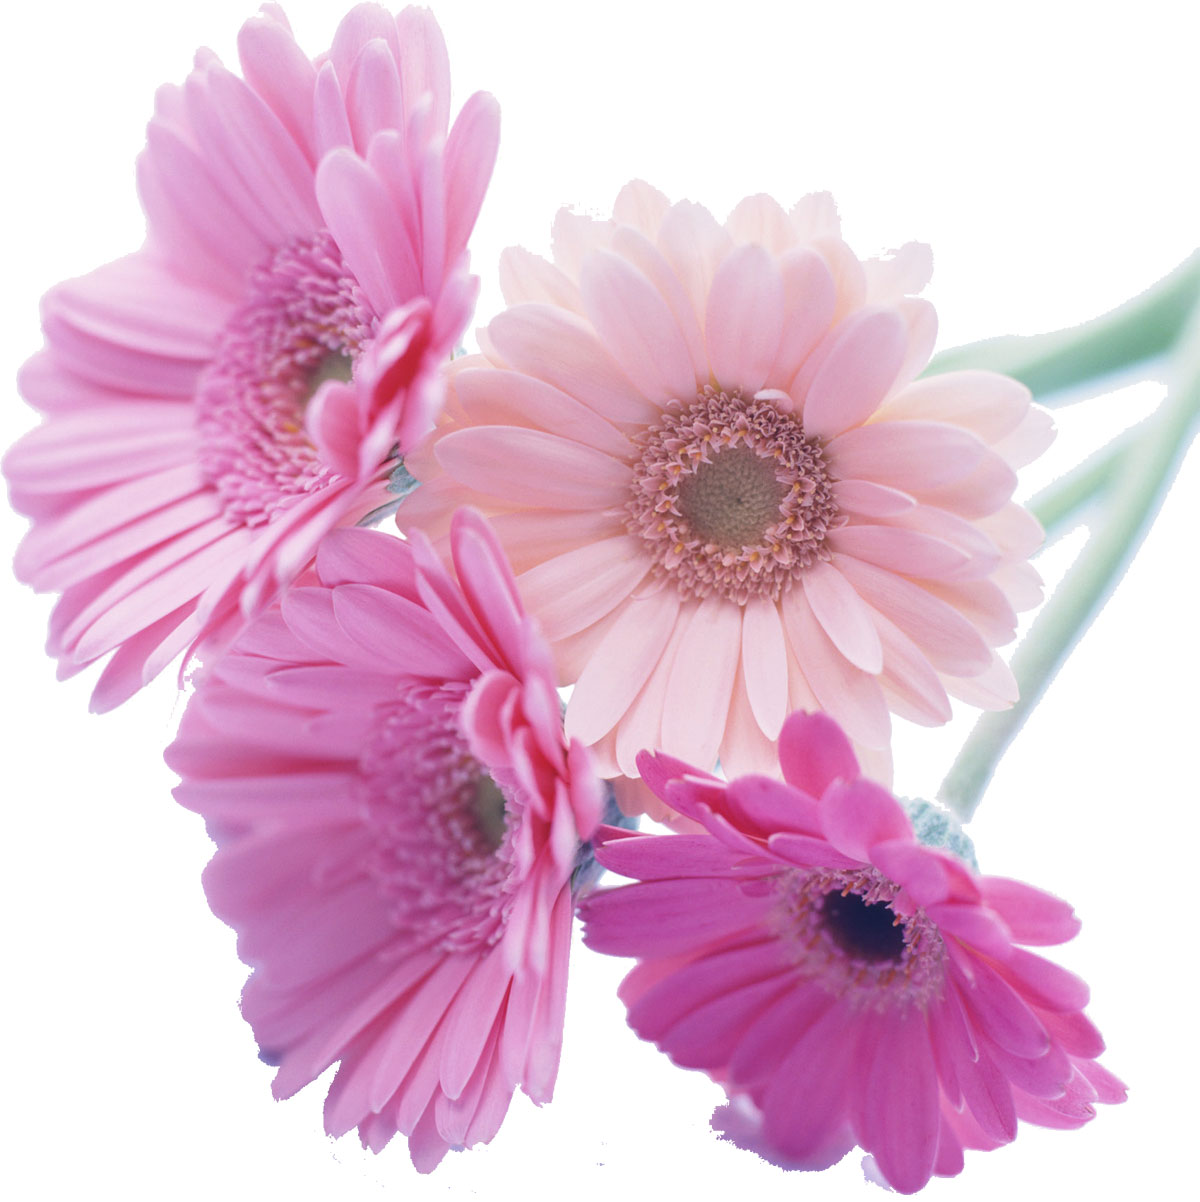 花や葉の写真 画像 フリー素材 No 242 ガーベラ ピンク